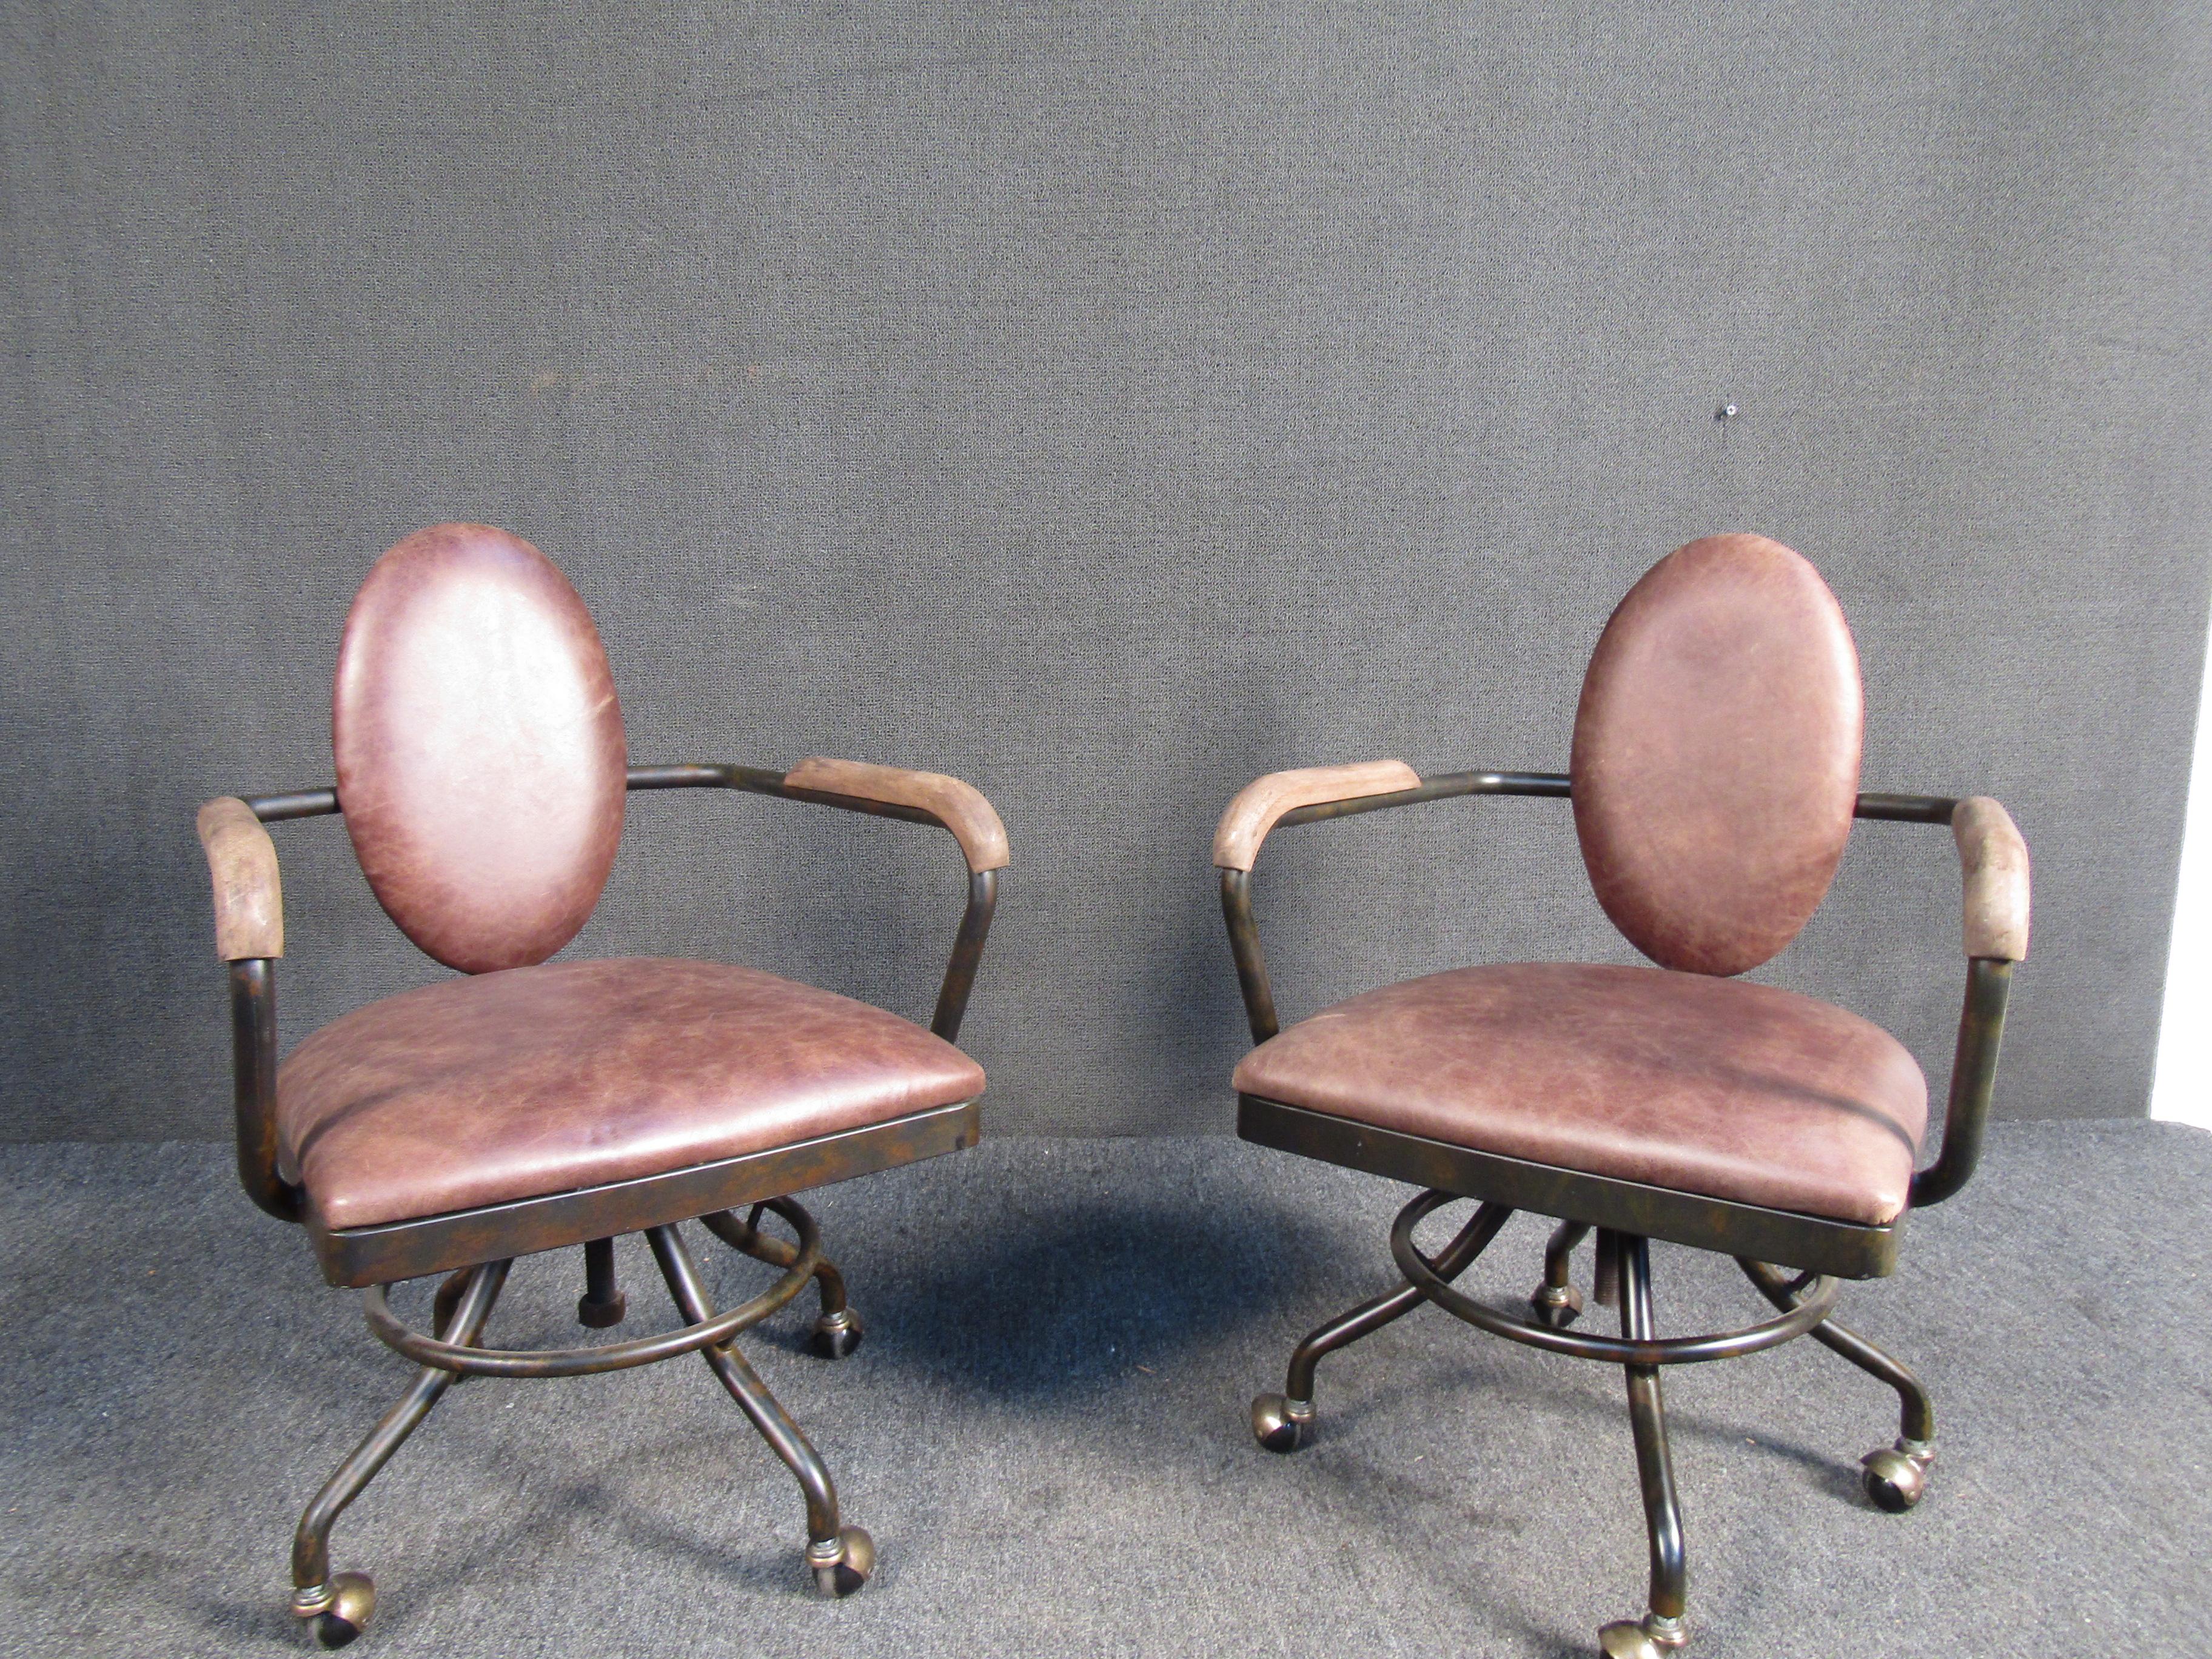 Ces chaises rustiques vintage à roulettes sont dotées d'une construction métallique solide, d'un siège pivotant, d'un dossier et d'une assise rembourrés ainsi que d'accoudoirs en bois. Un ajout unique à tout espace de bureau.

Veuillez confirmer